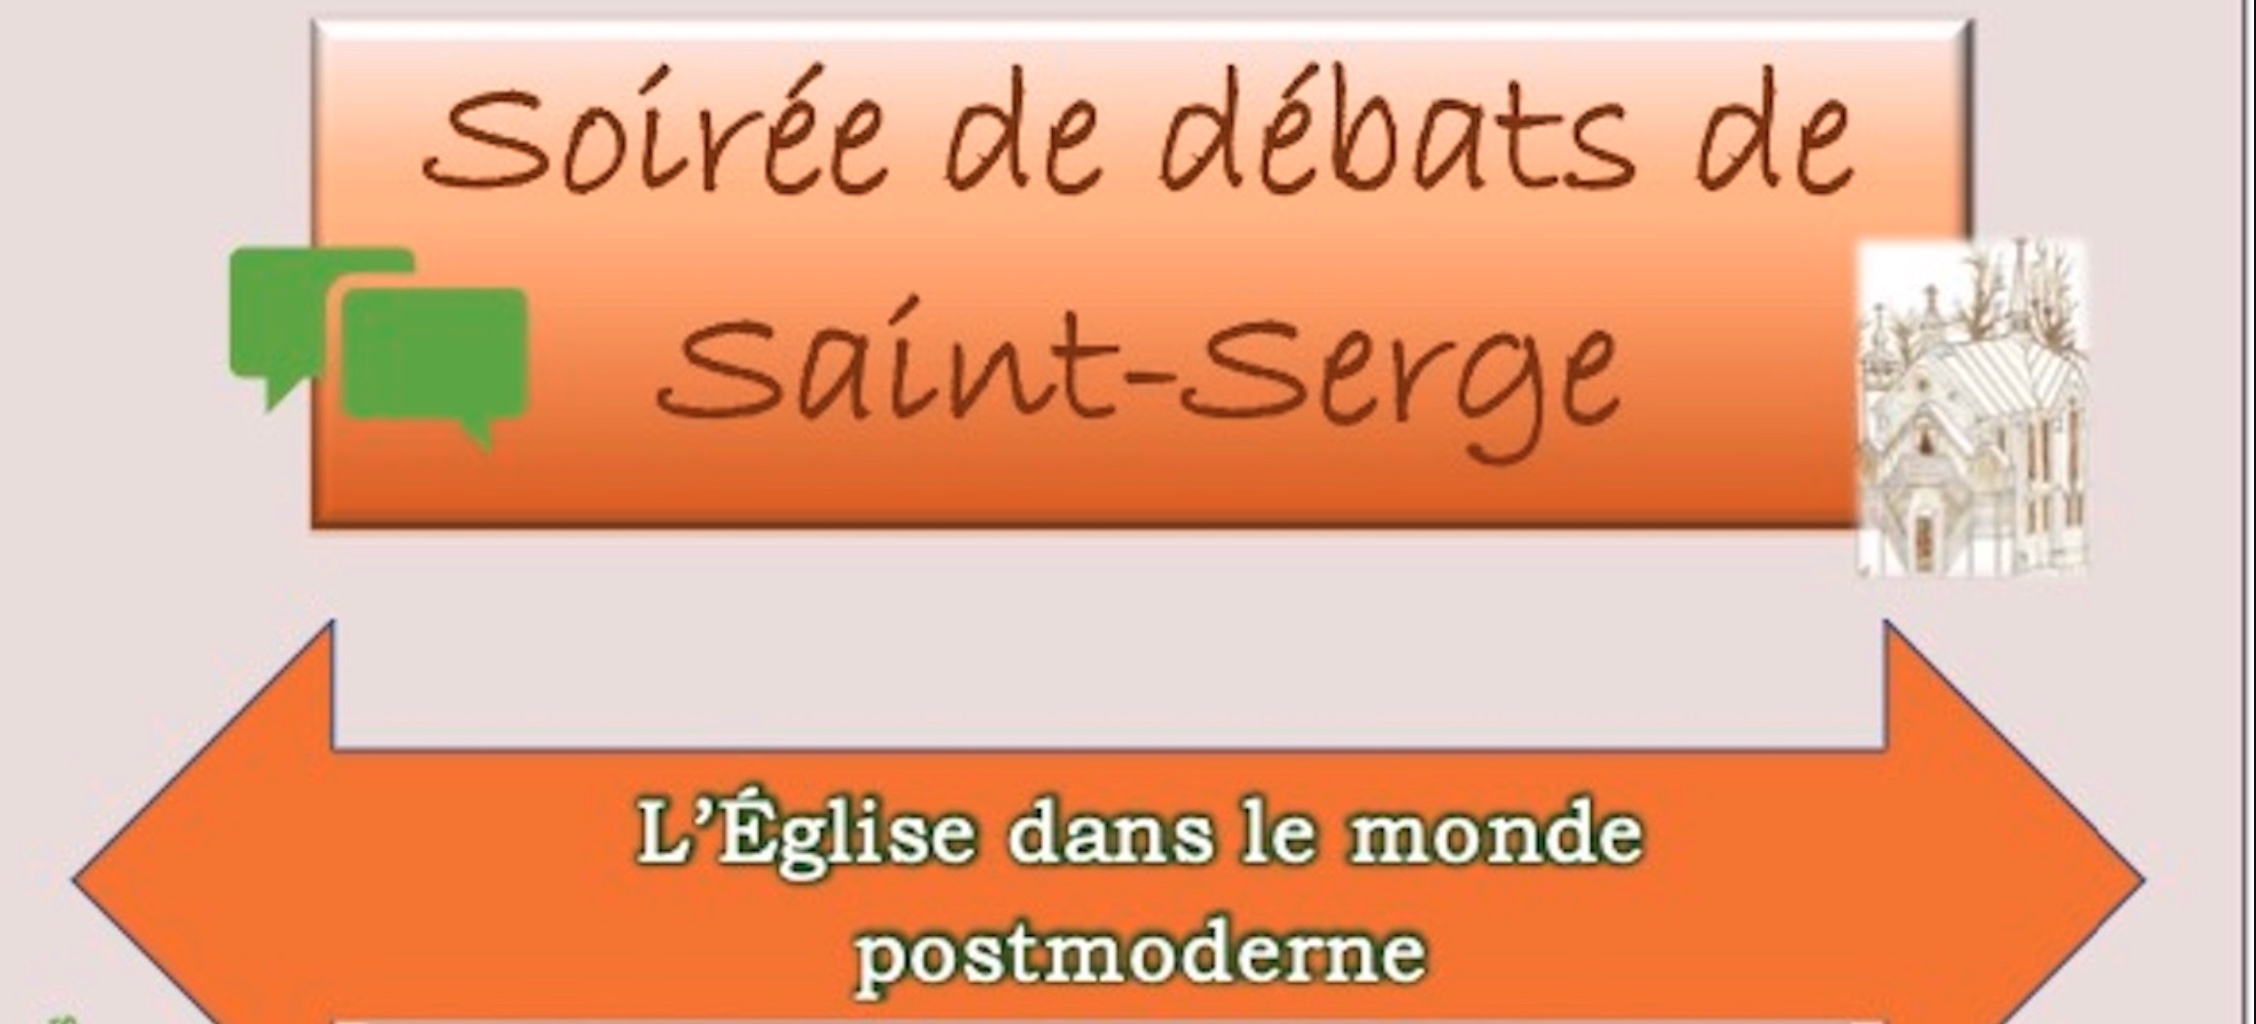 Soirée de débats de Saint-Serge: L’Eglise dans le monde postmoderne